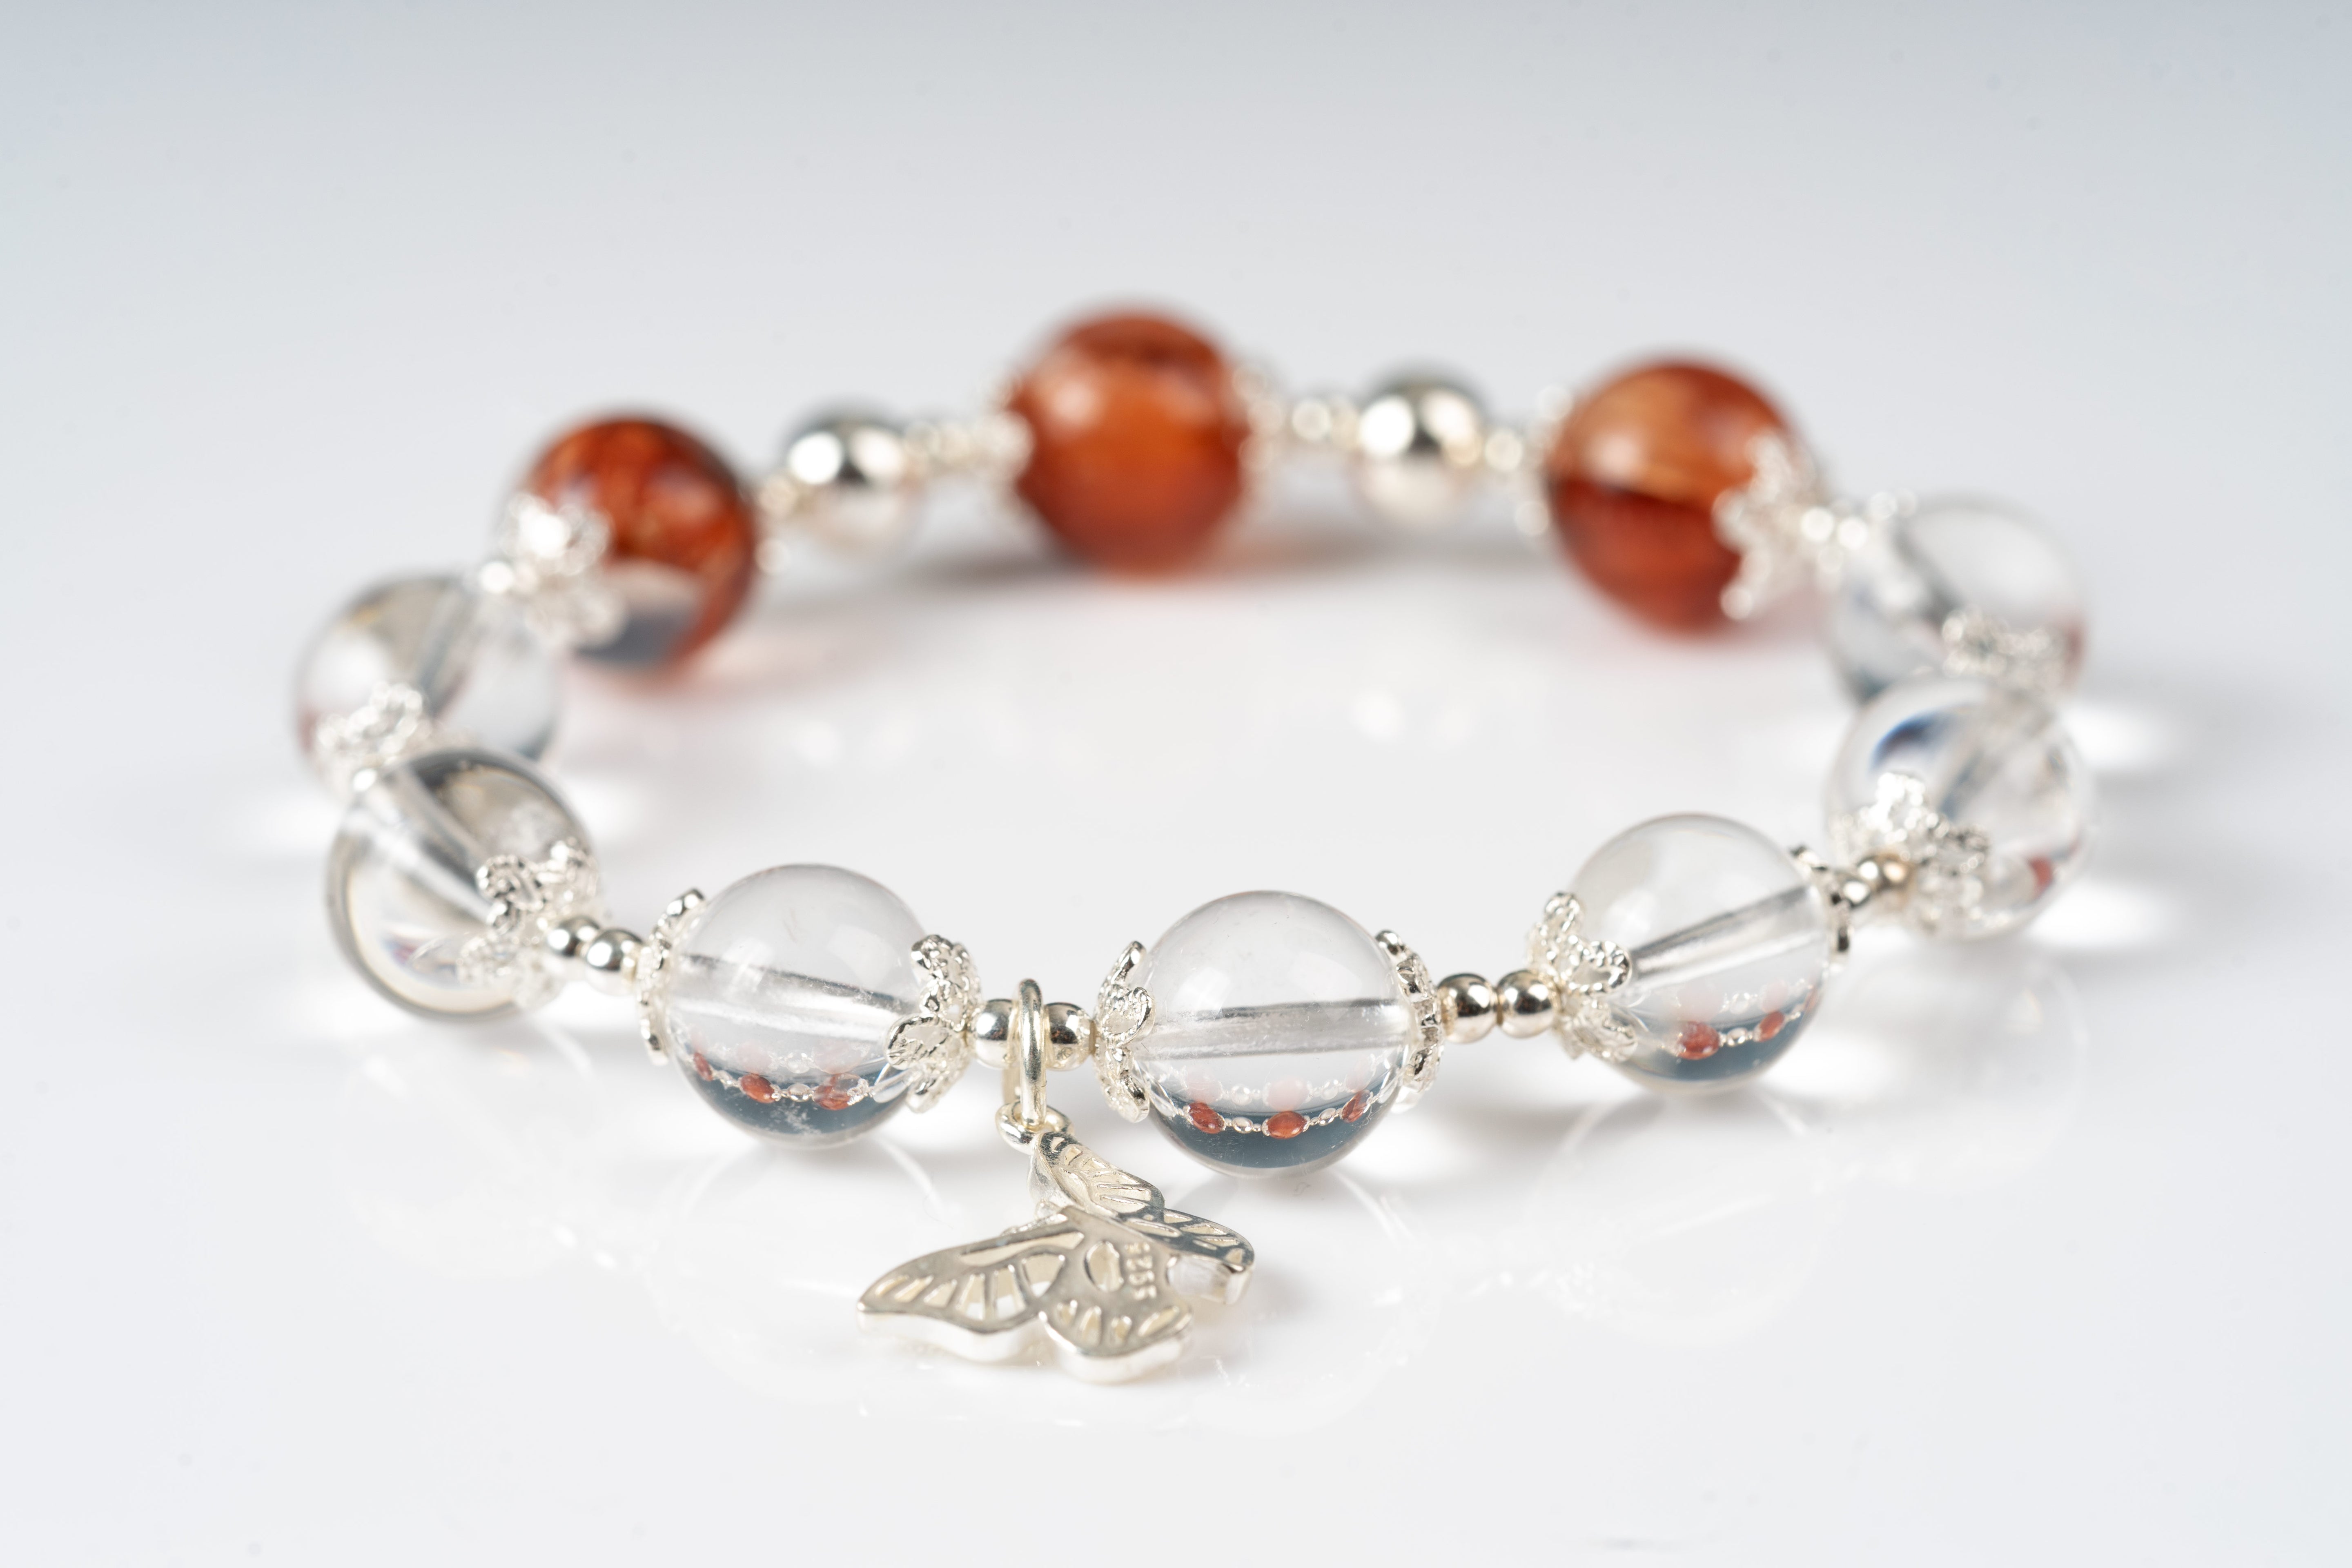 Fire quartz & clear quartz Sterling silver bracelet